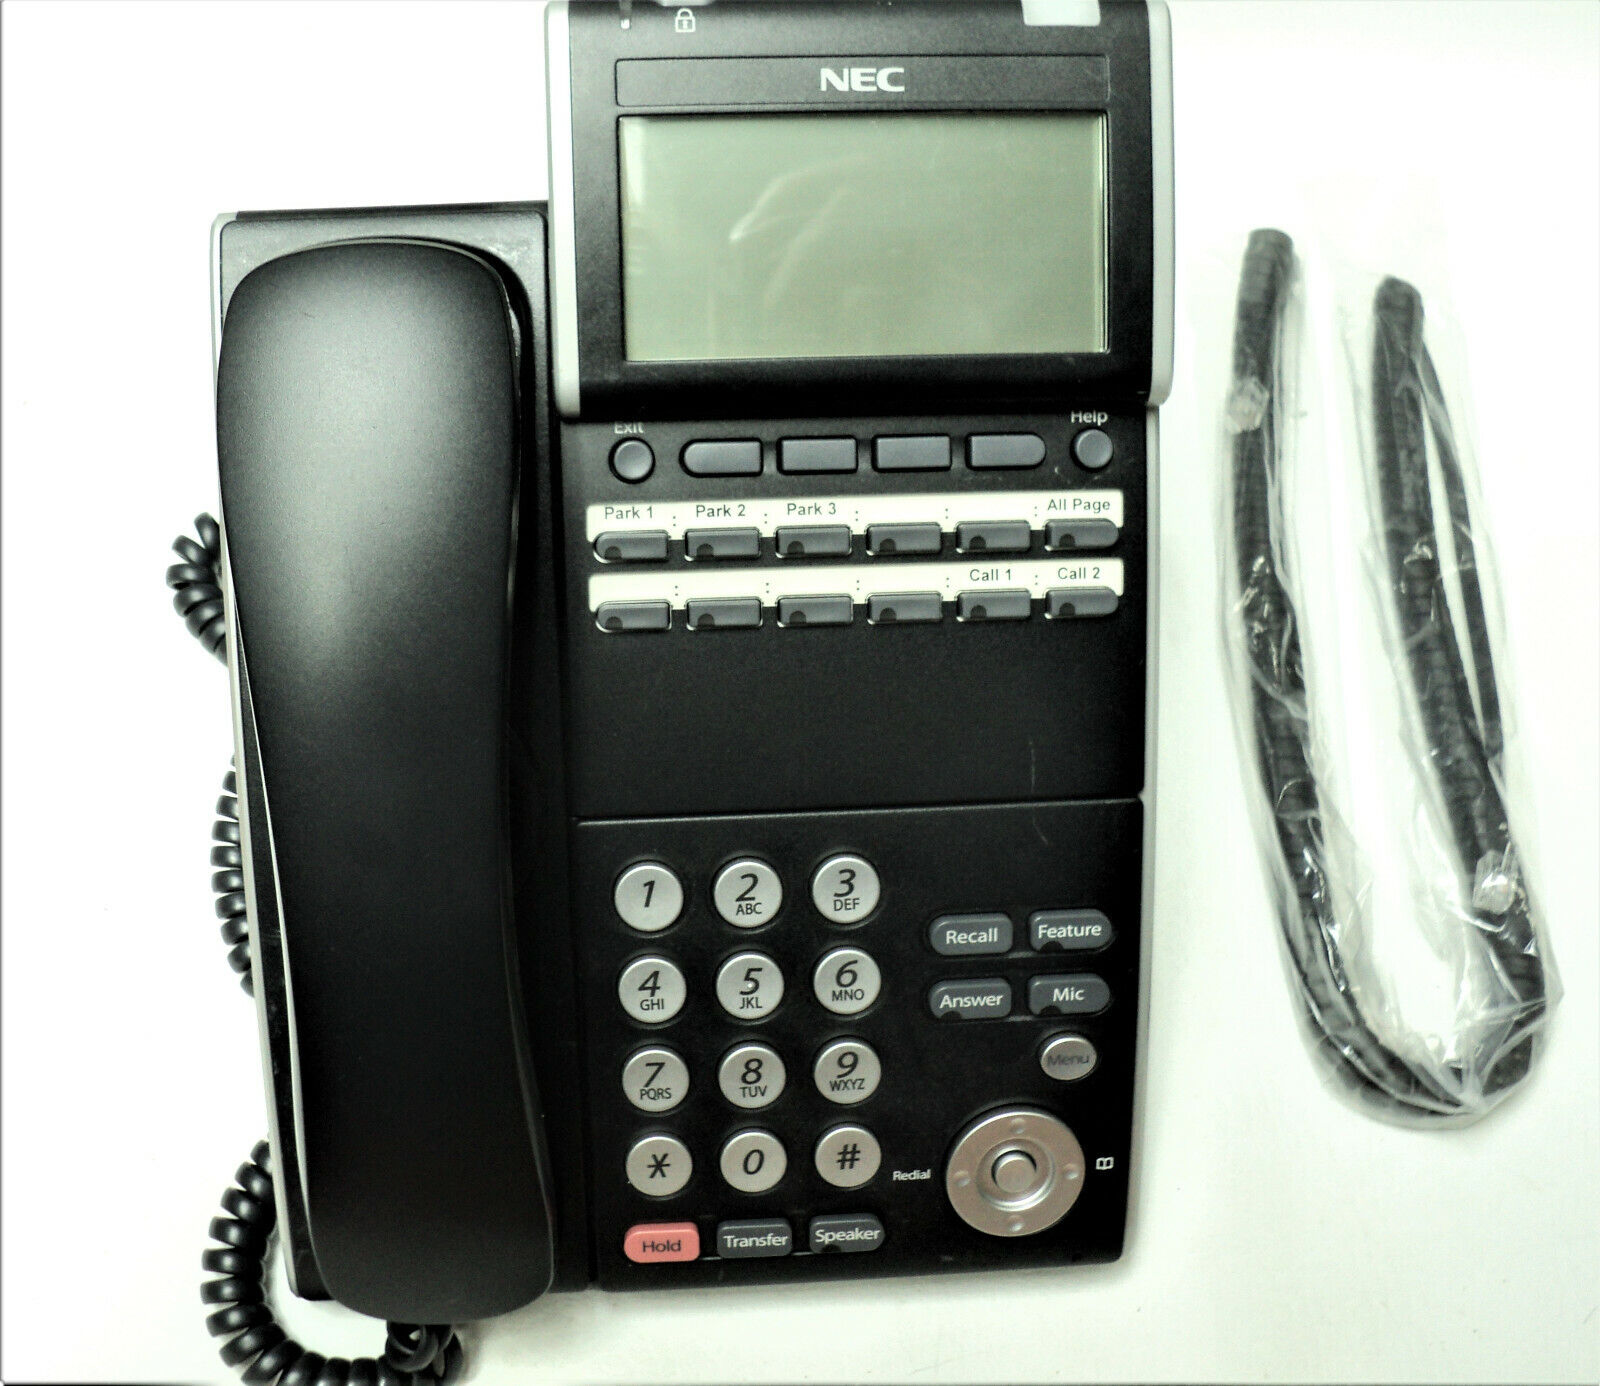 NEC ITL-12D DT700 Phone IP Warranty VoIP 690002 Business SV8100 SV9100 Black